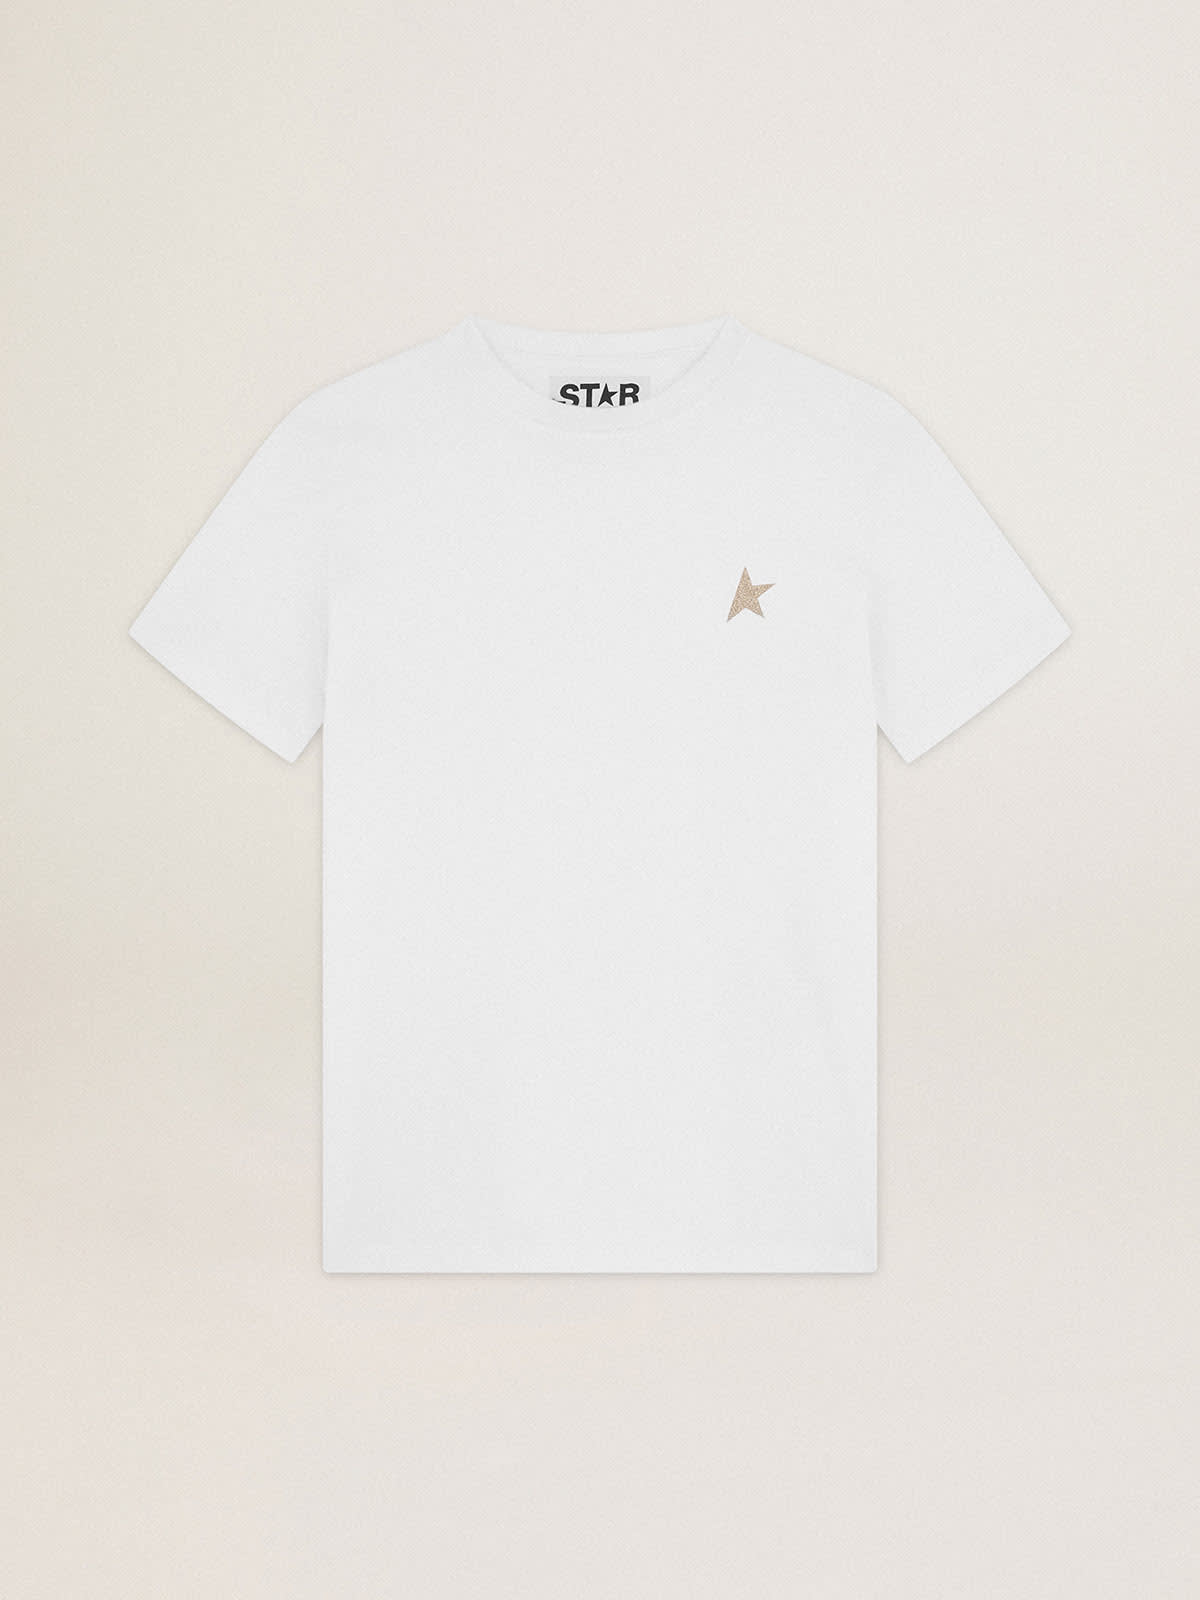 Golden Goose - T-shirt blanc collection Star avec étoile à paillettes dorées sur le devant in 